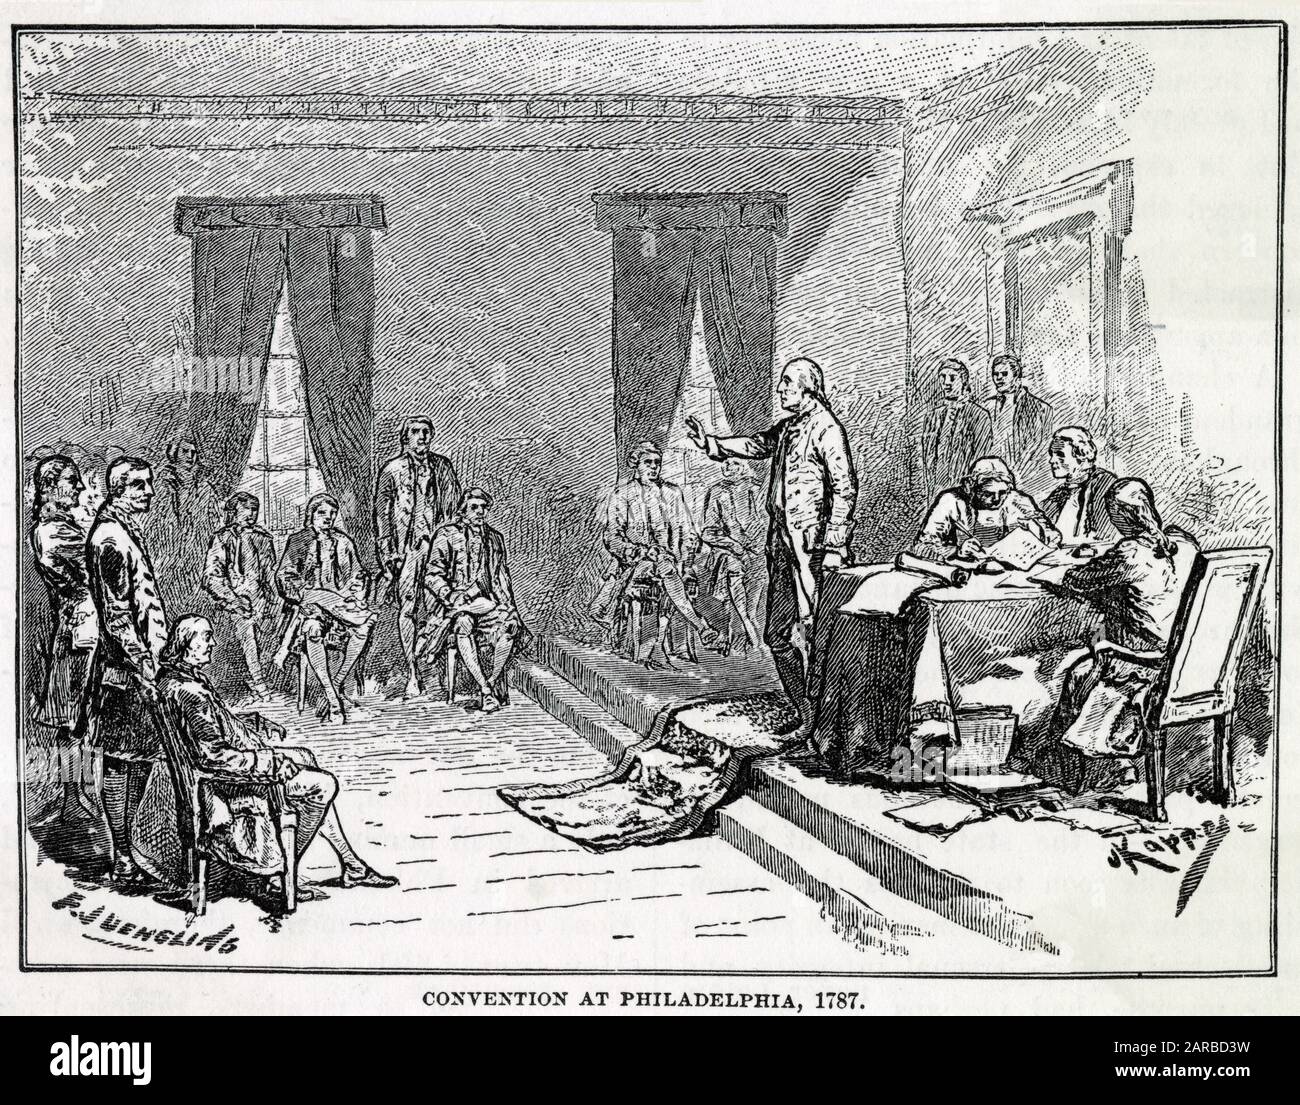 Der Konvent In Philadelphia schreibt die US-Verfassung Nach Dem amerikanischen Unabhängigkeitskrieg aus Datum: 1787 Stockfoto